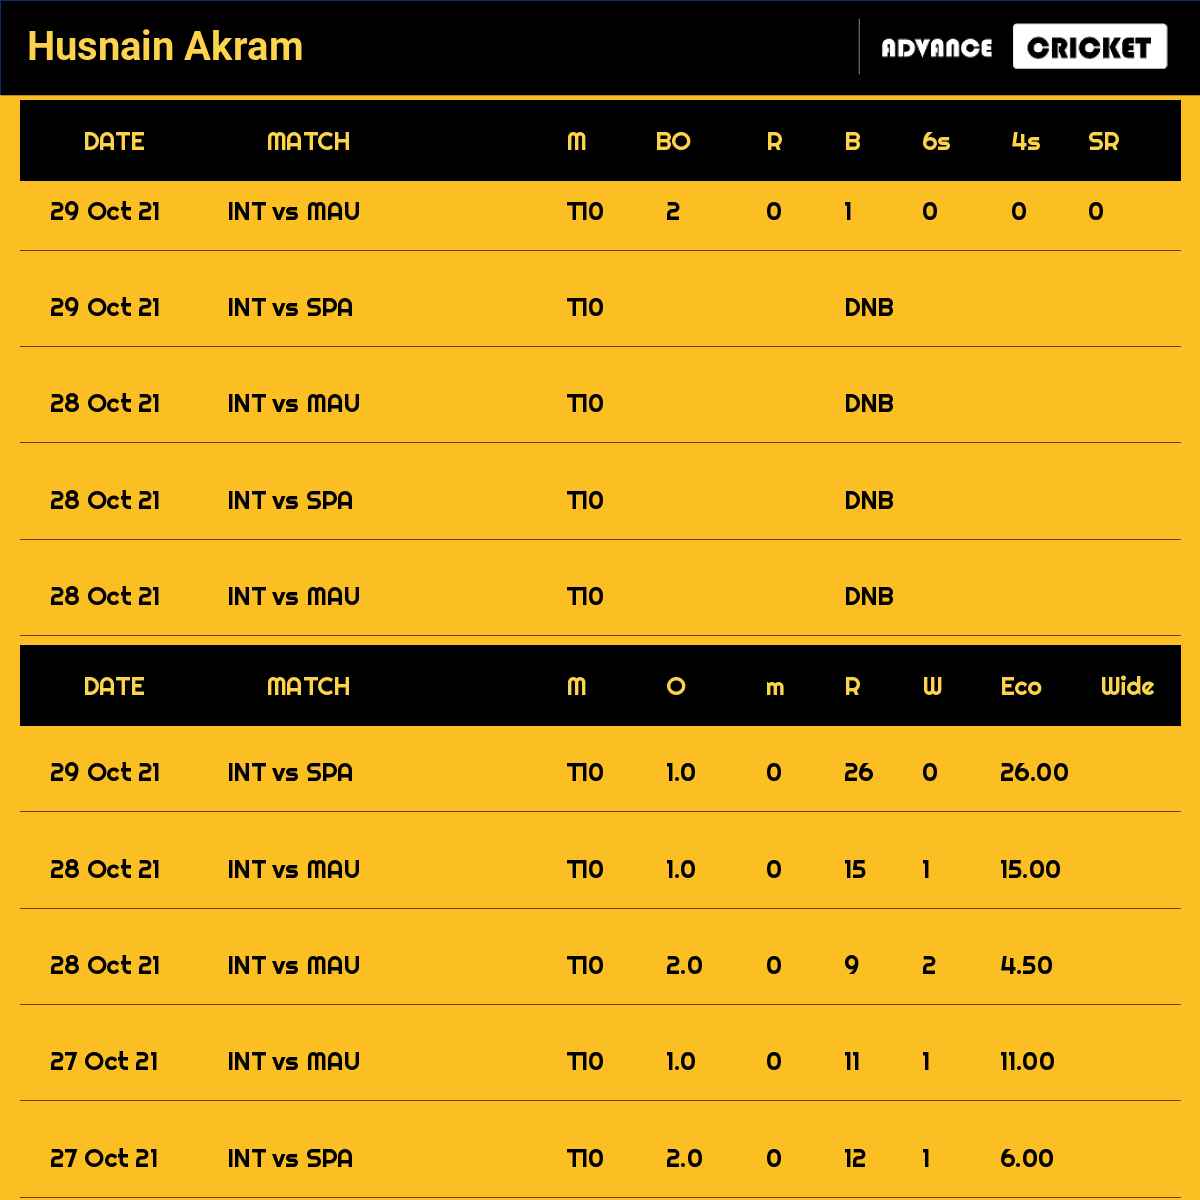 Husnain Akram recent matches